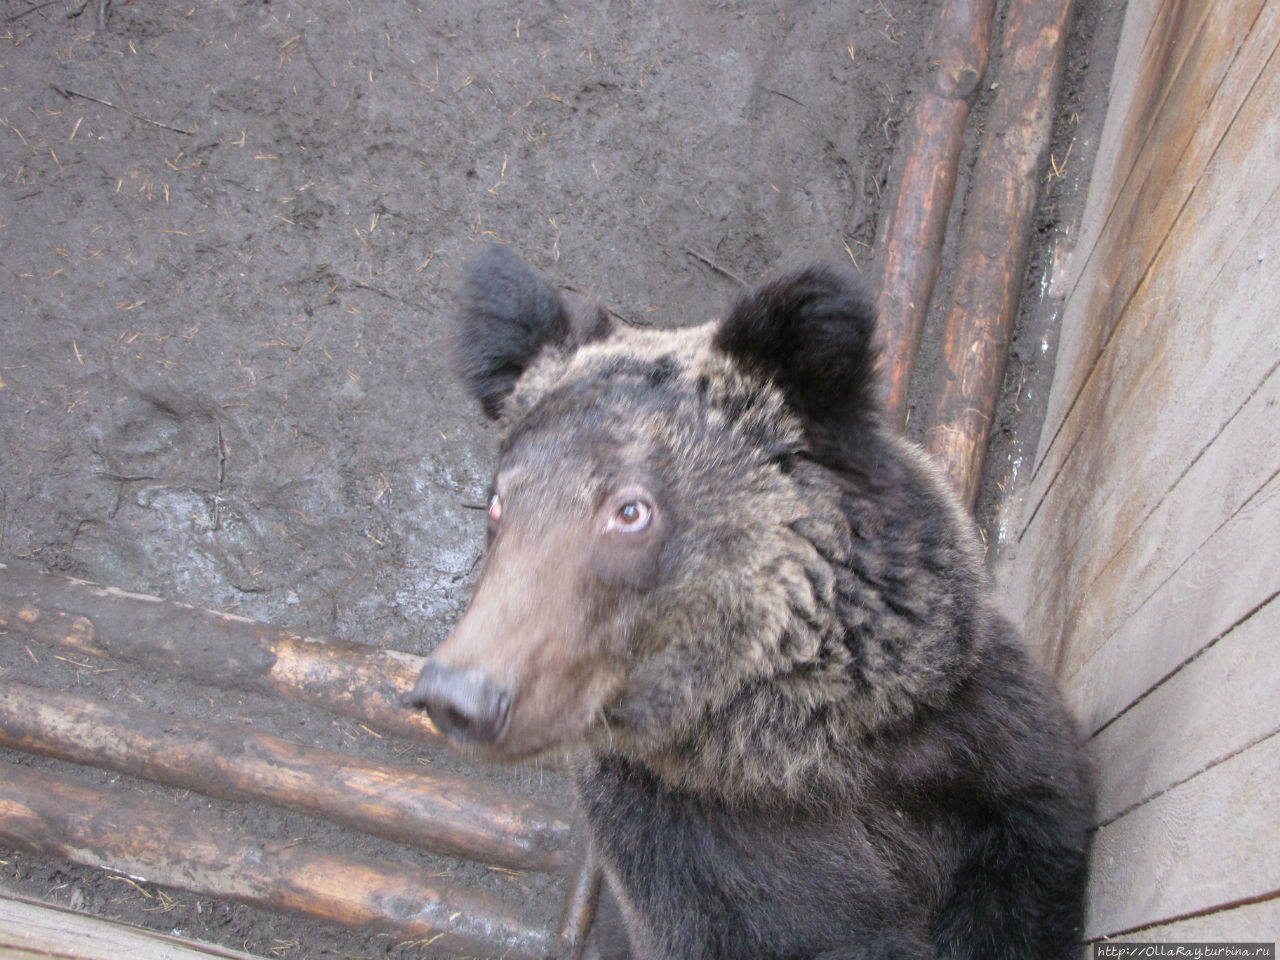 Цирковой медведь, практически потерявший зрение от блеска софитов. Петрозаводск, Россия